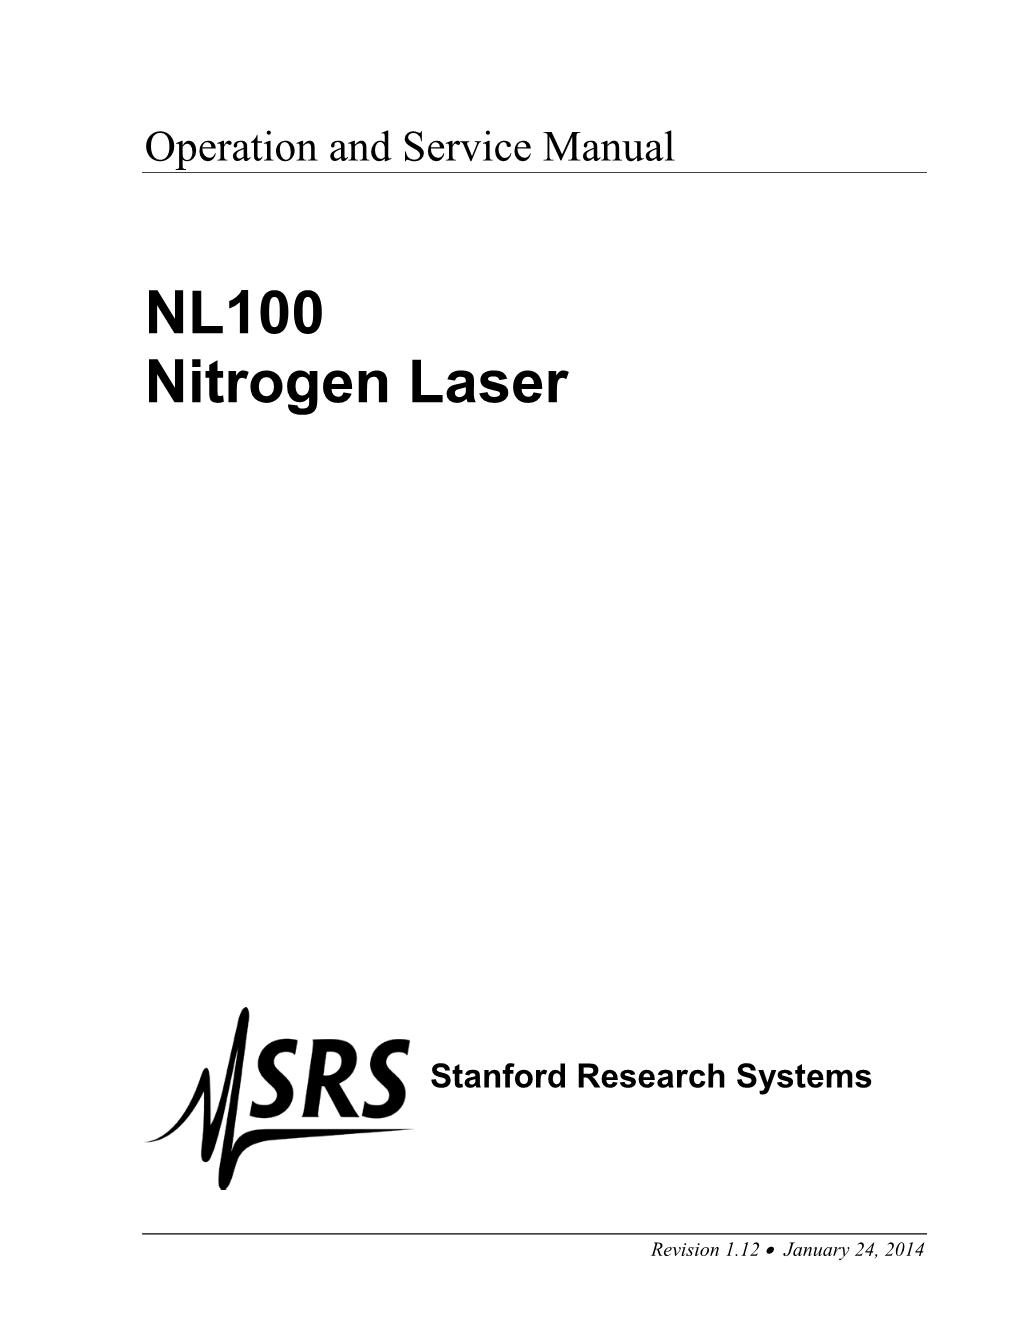 NL100 Nitrogen Laser